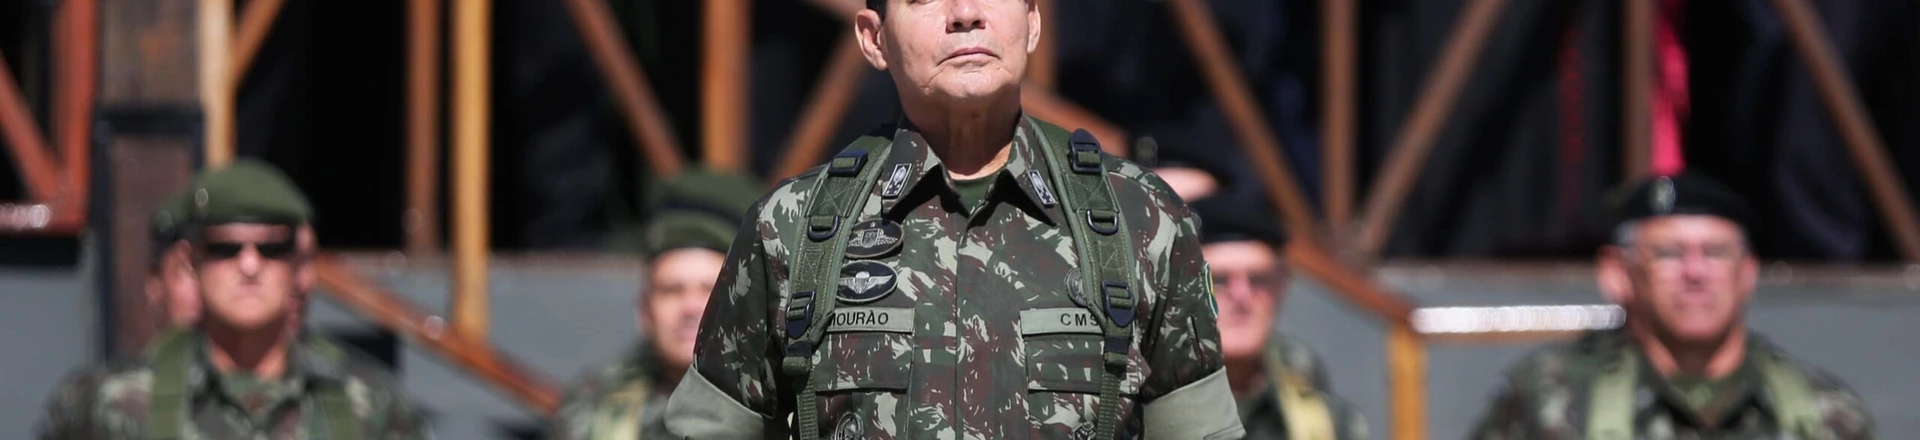 PORTO ALEGRE, RS  - 28.04.2014 GENERAL - O general Antônio Hamilton Martins Mourão - Comando Militar do Sul. (Foto: Diego Vara/Agência RBS/Folhapress)    	   ORG XMIT: AGEN1510161918239236 ORG XMIT: AGEN1709181435772378 ORG XMIT: AGEN1709242040028387